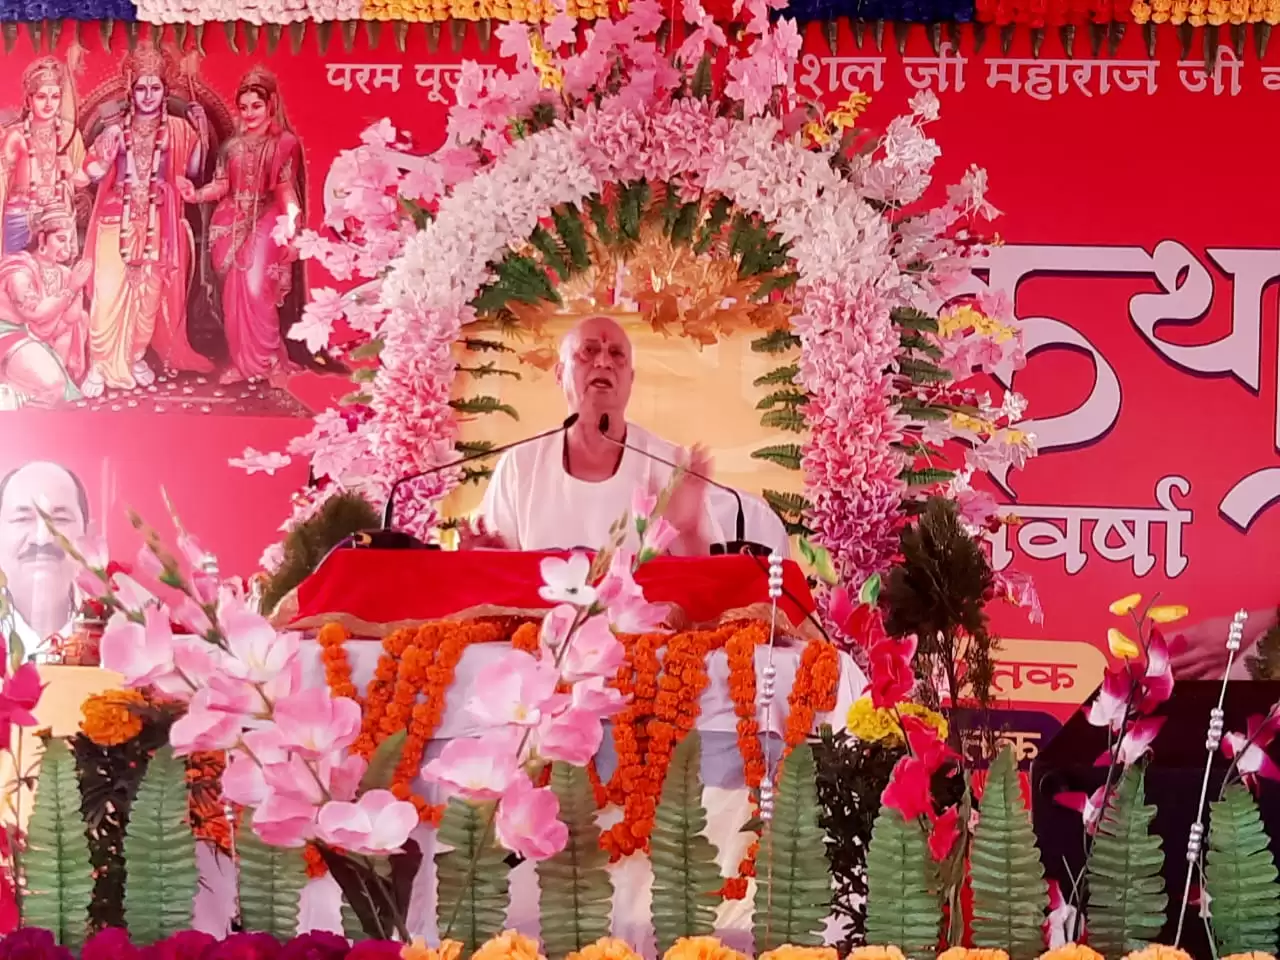 Ramakatha vijay kaushal ji mahraj khargupur gonda